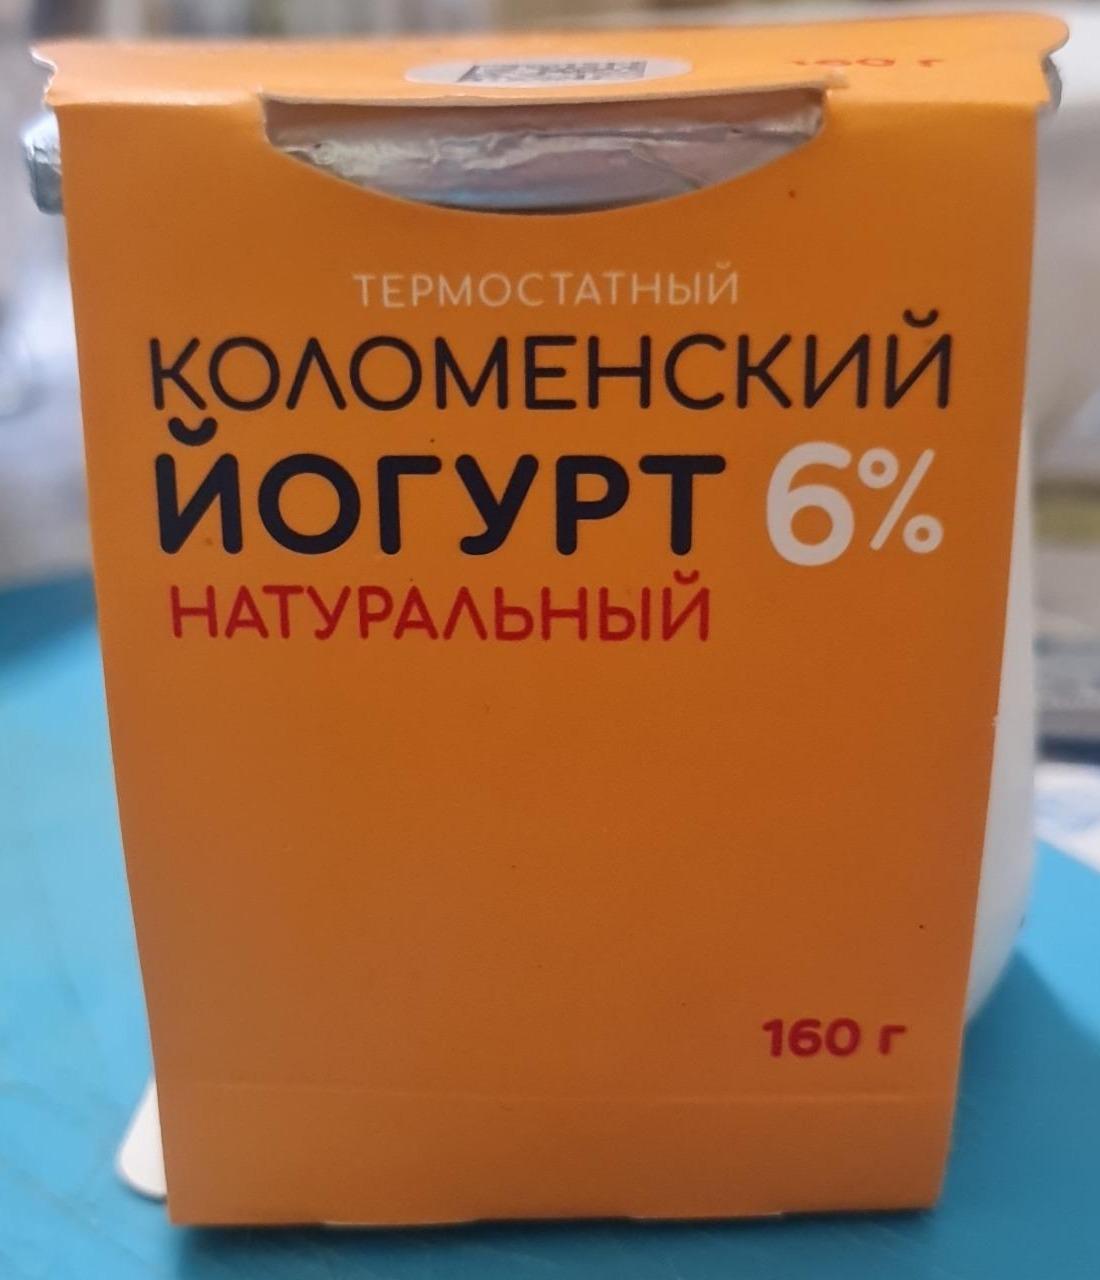 Фото - термостатный йогурт натуральный 6% Коломенский